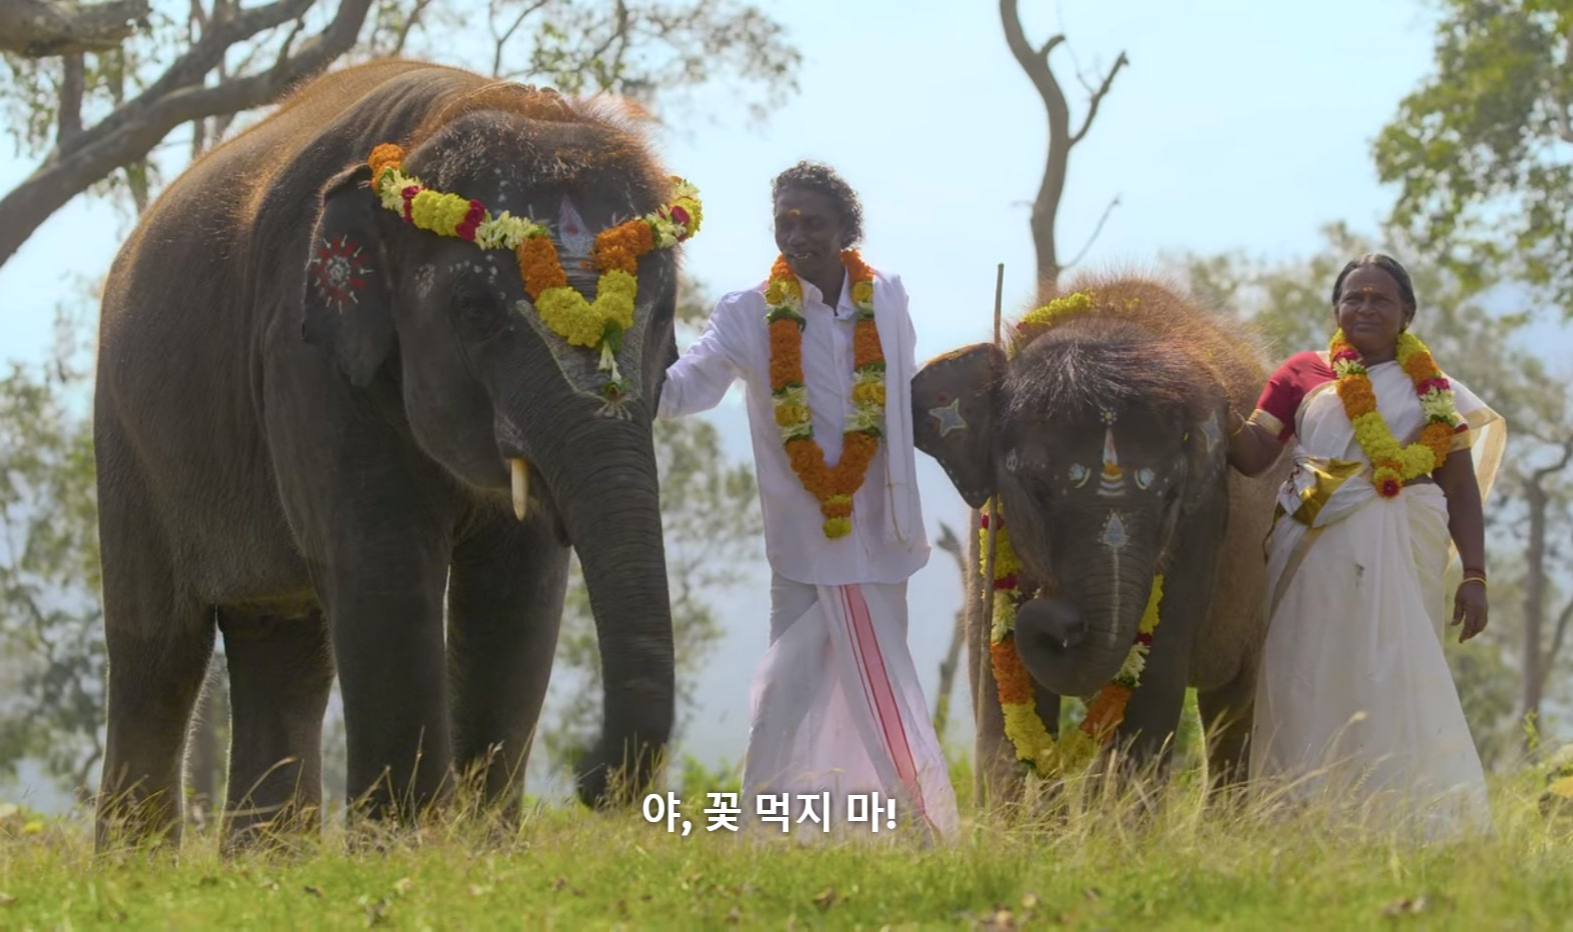 &lt;아기 코끼리와 노부부&gt; 다큐멘터리 중 봄만과 벨라의 결혼식에 함께한 아기 코끼리 라구와 암무